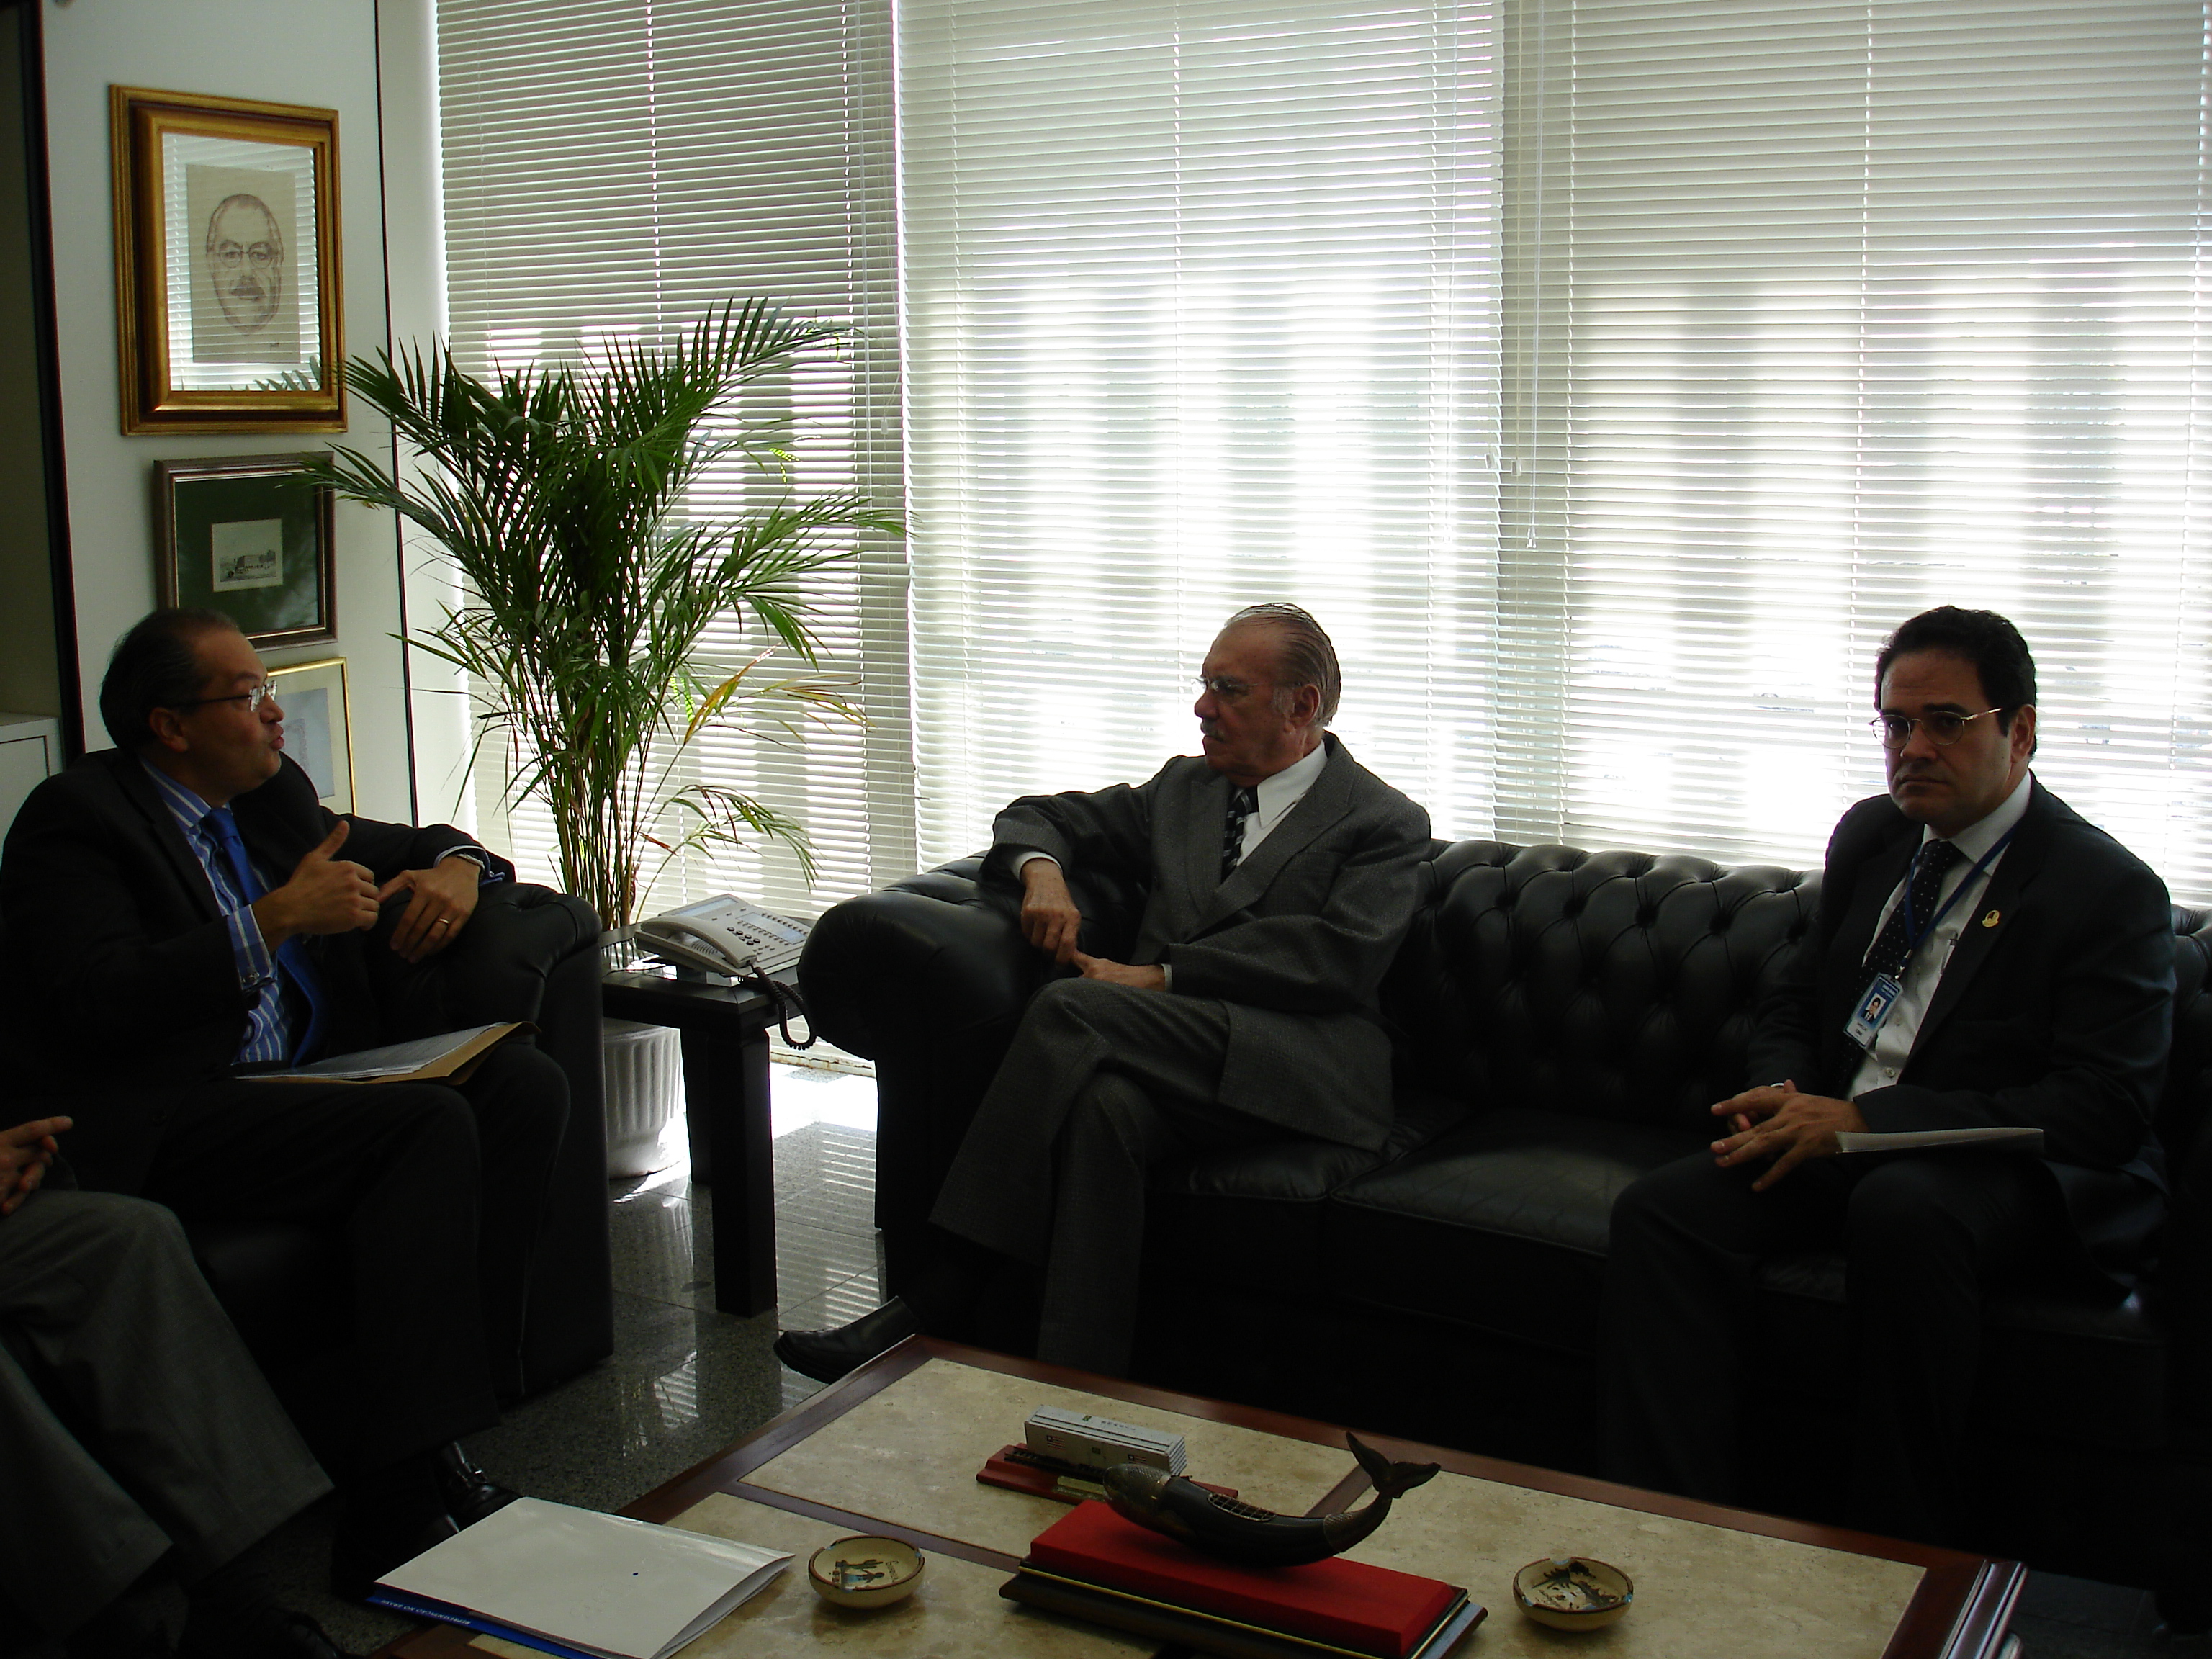 INSTITUCIONAL - Presidente Sarney reafirma apoio ao Interlegis, em encontro com representantes do BID